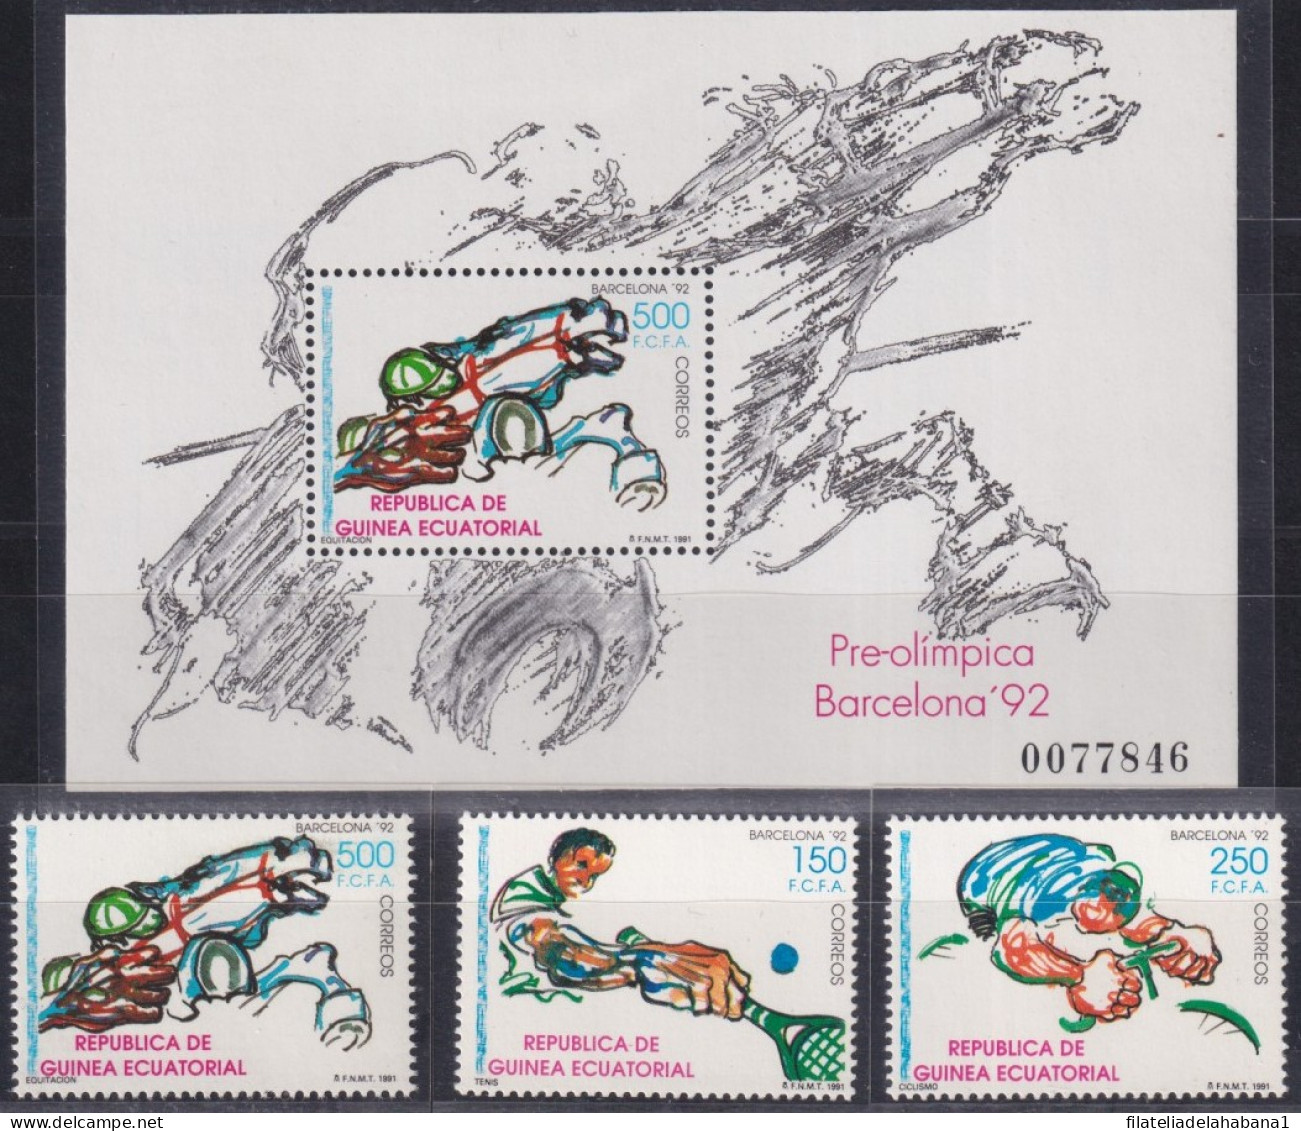 F-EX48876 GUINEA ECUATORIAL MNH 1992 PRE-OLYMPIC GAMES BARCELONA TENNIS CICLING.  - Verano 1992: Barcelona